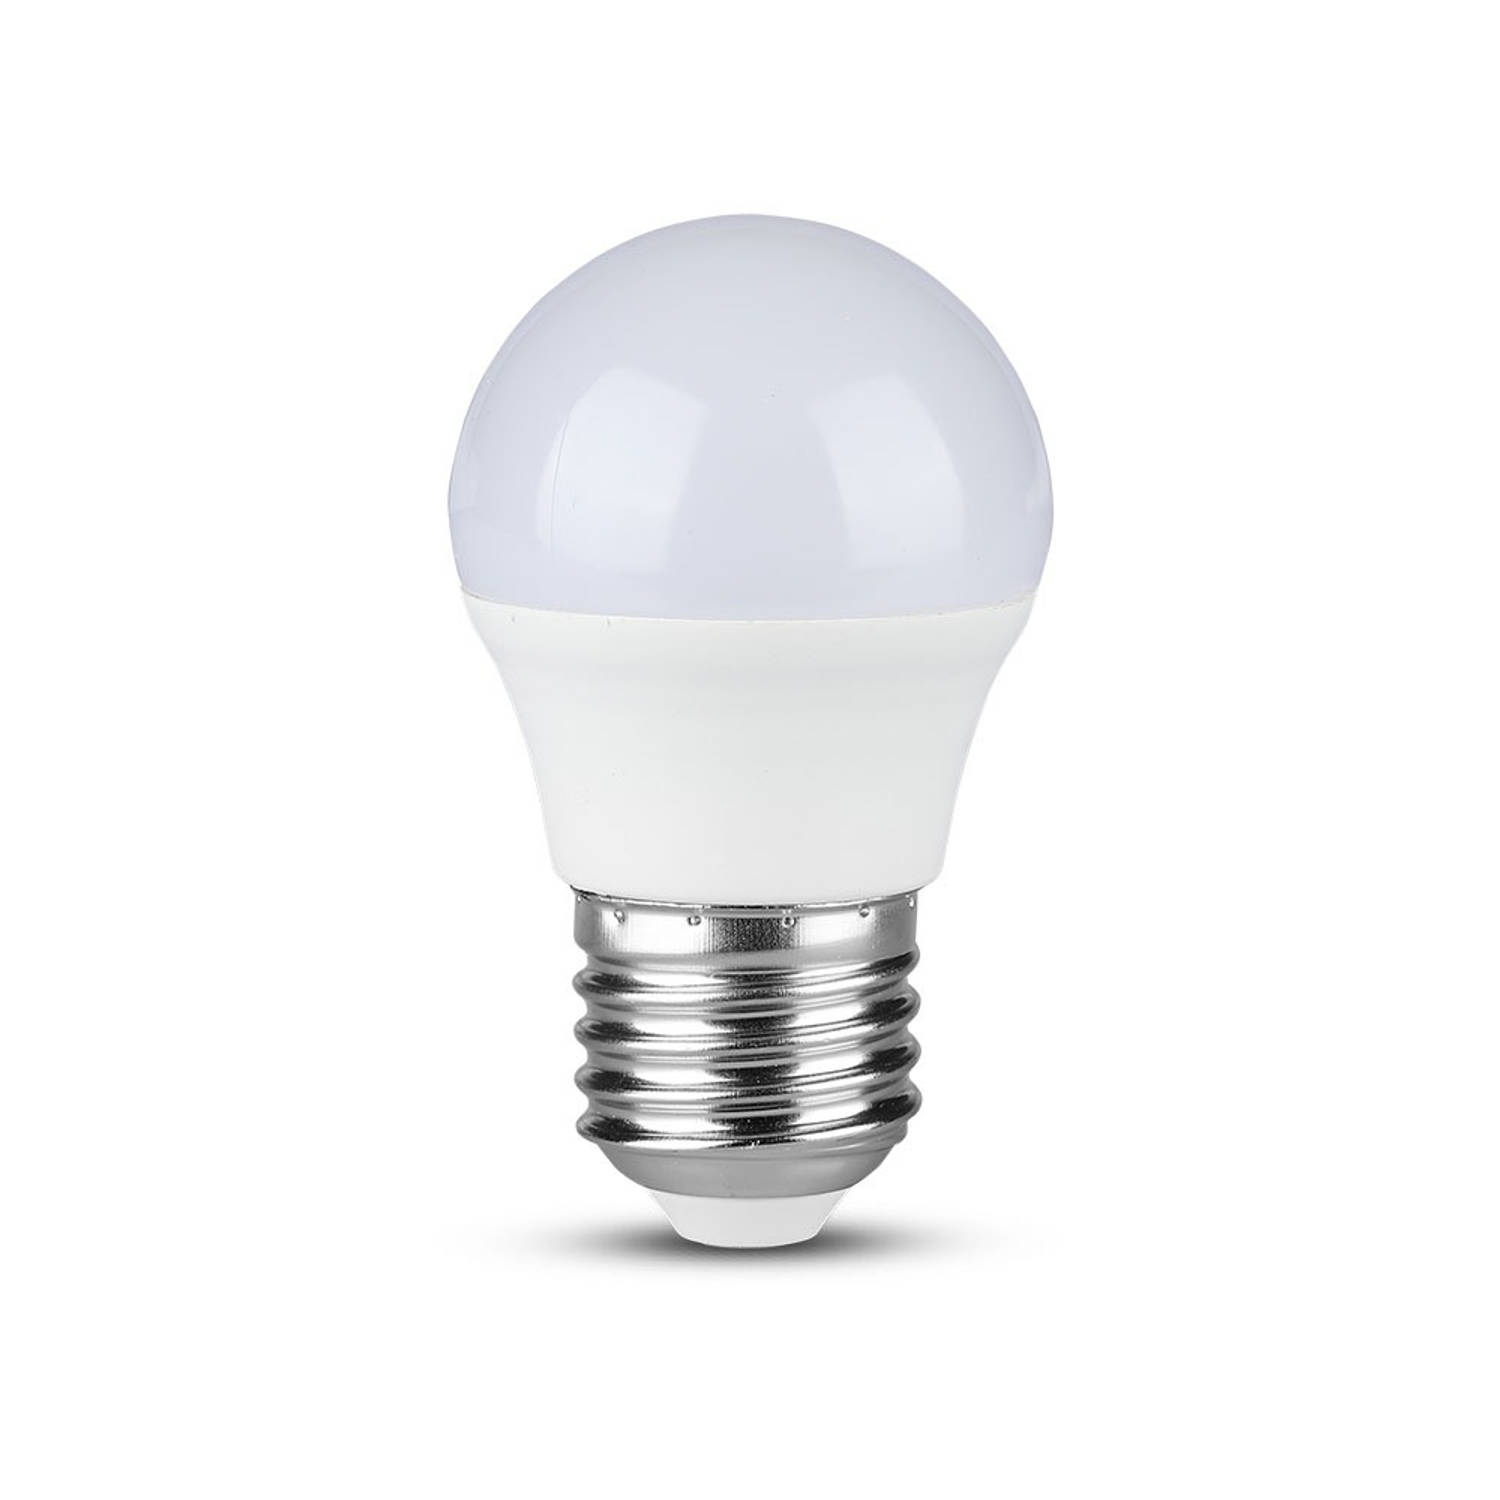 V-TAC VT-1879 energy-saving lamp 5,5 W E27 A+ - 4000K